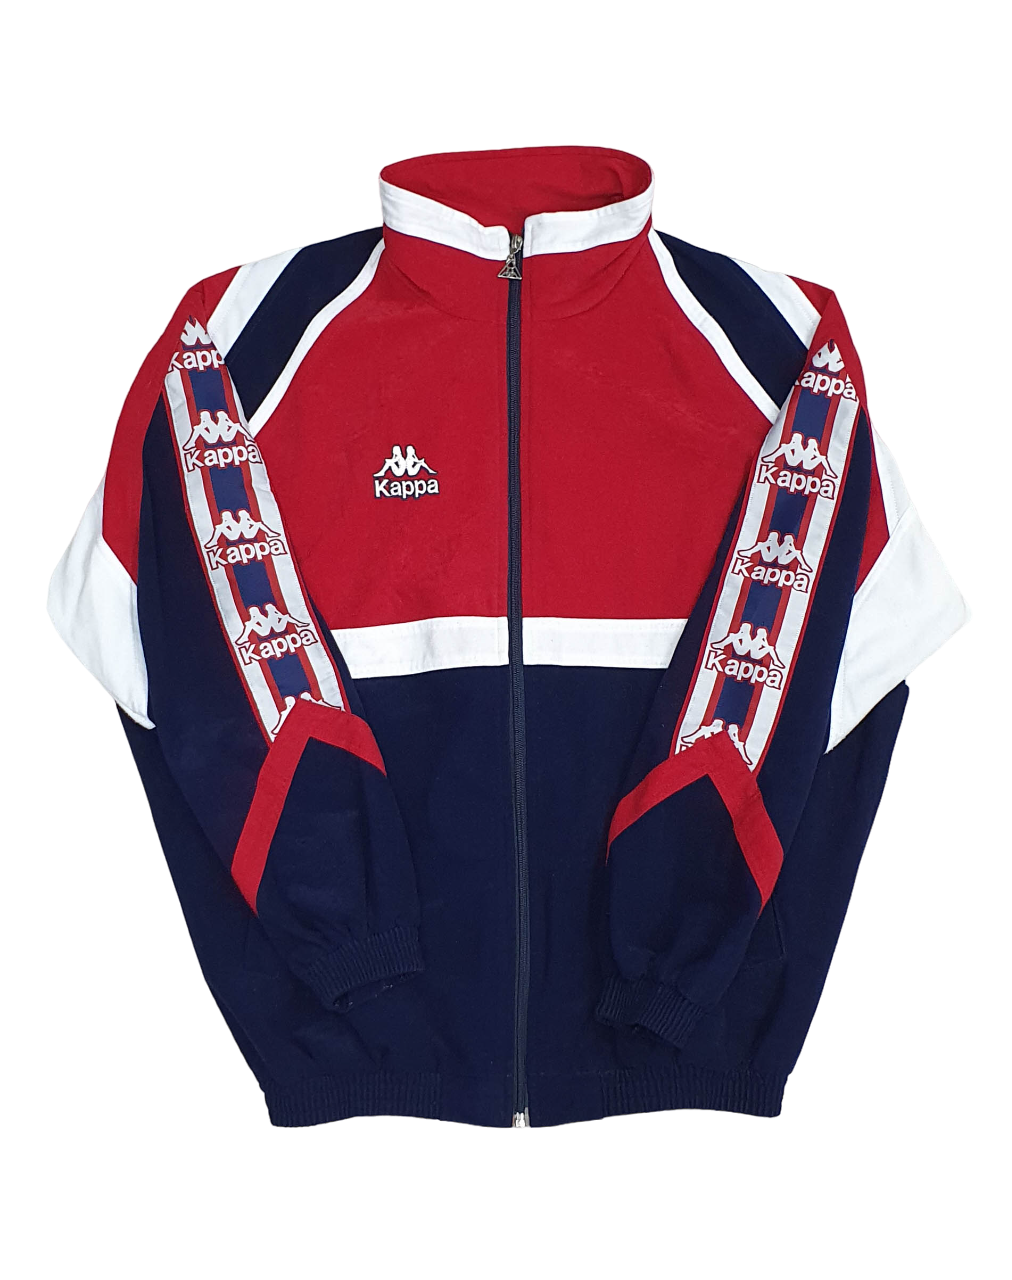 Jacket Kappa Athletic Bilbao 1995 L – Wateke Vintage